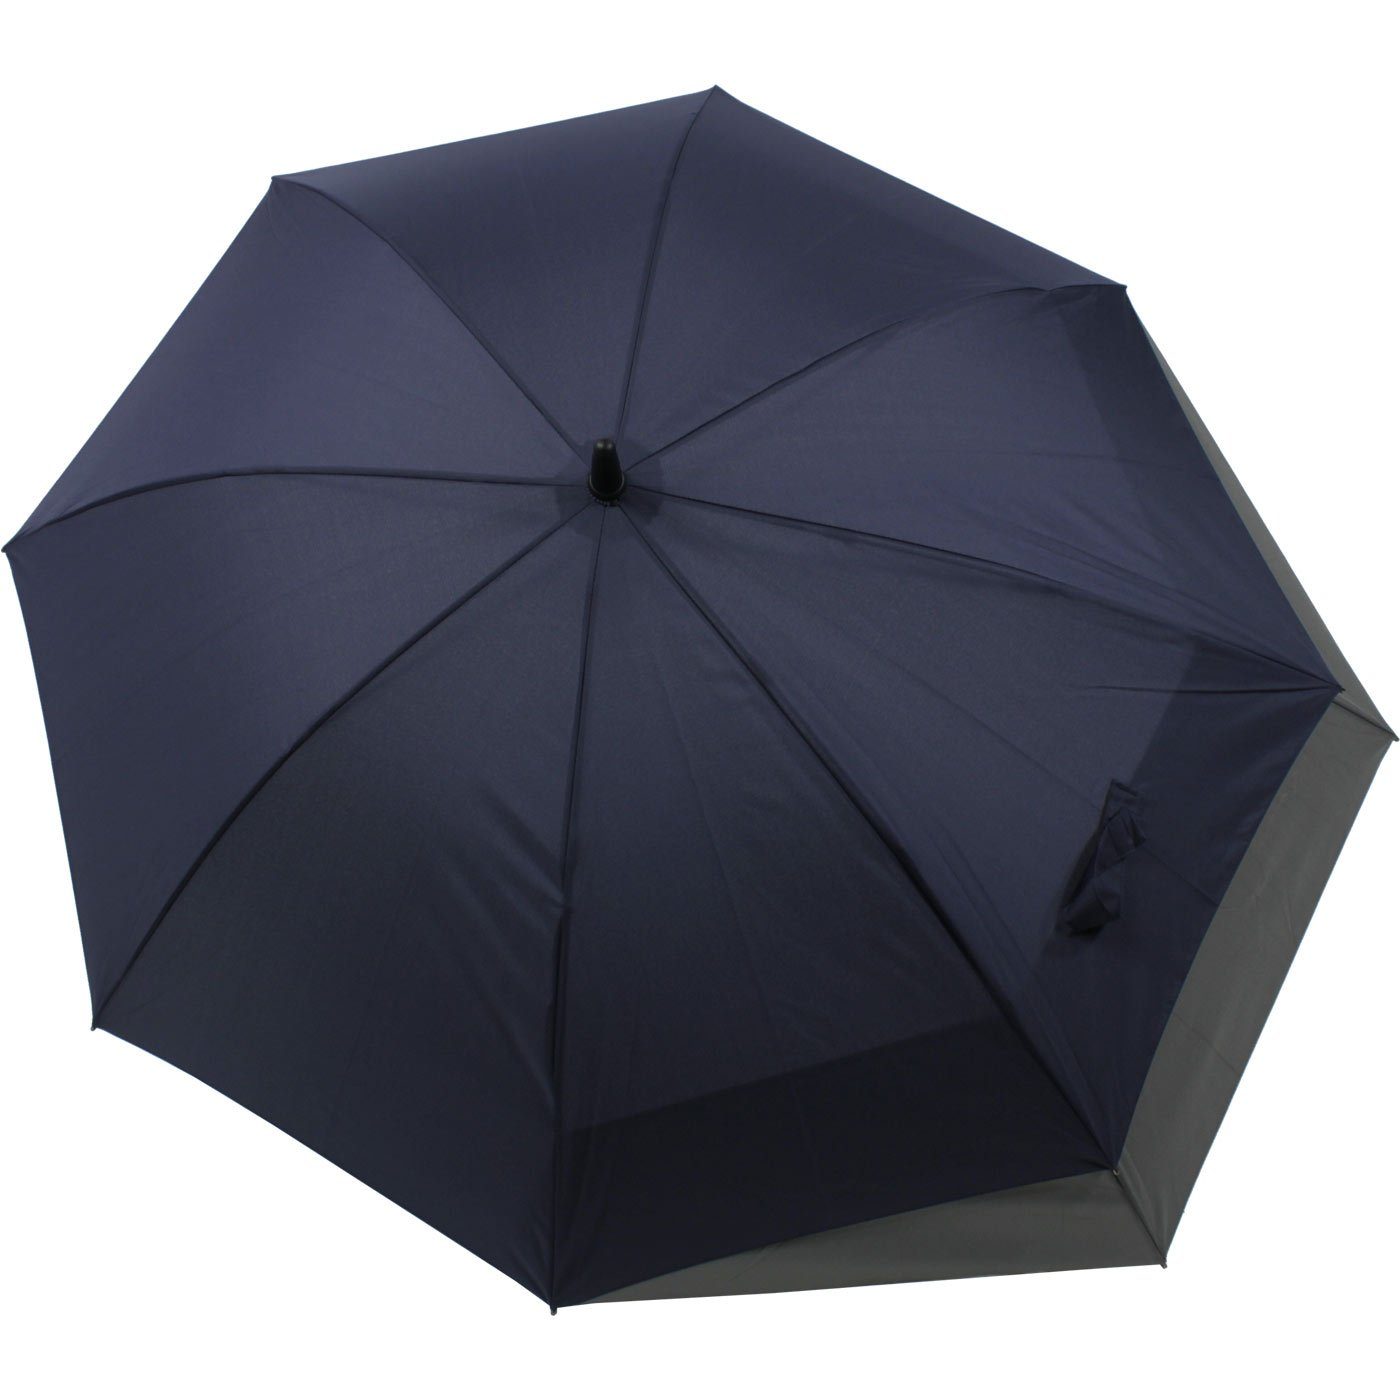 doppler® Langregenschirm Fiberglas mit XL, - für Öffnen navyblau-grau Schutz Regen Auf-Automatik sich mehr vor vergrößert to beim Move